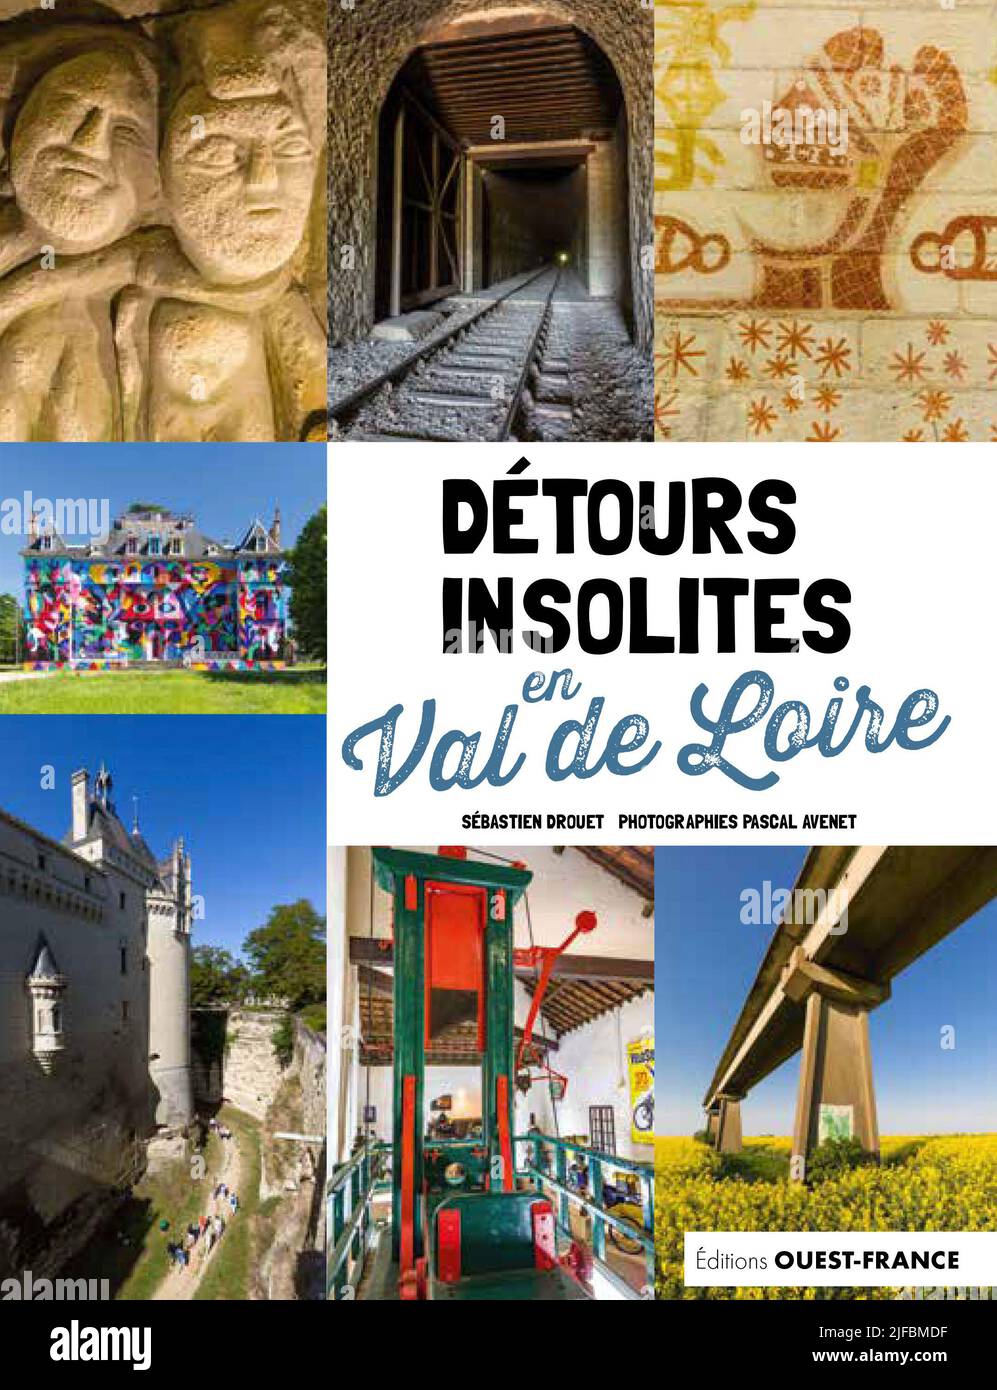 Couverture de livre Detours insolites en Val de Loire Banque D'Images